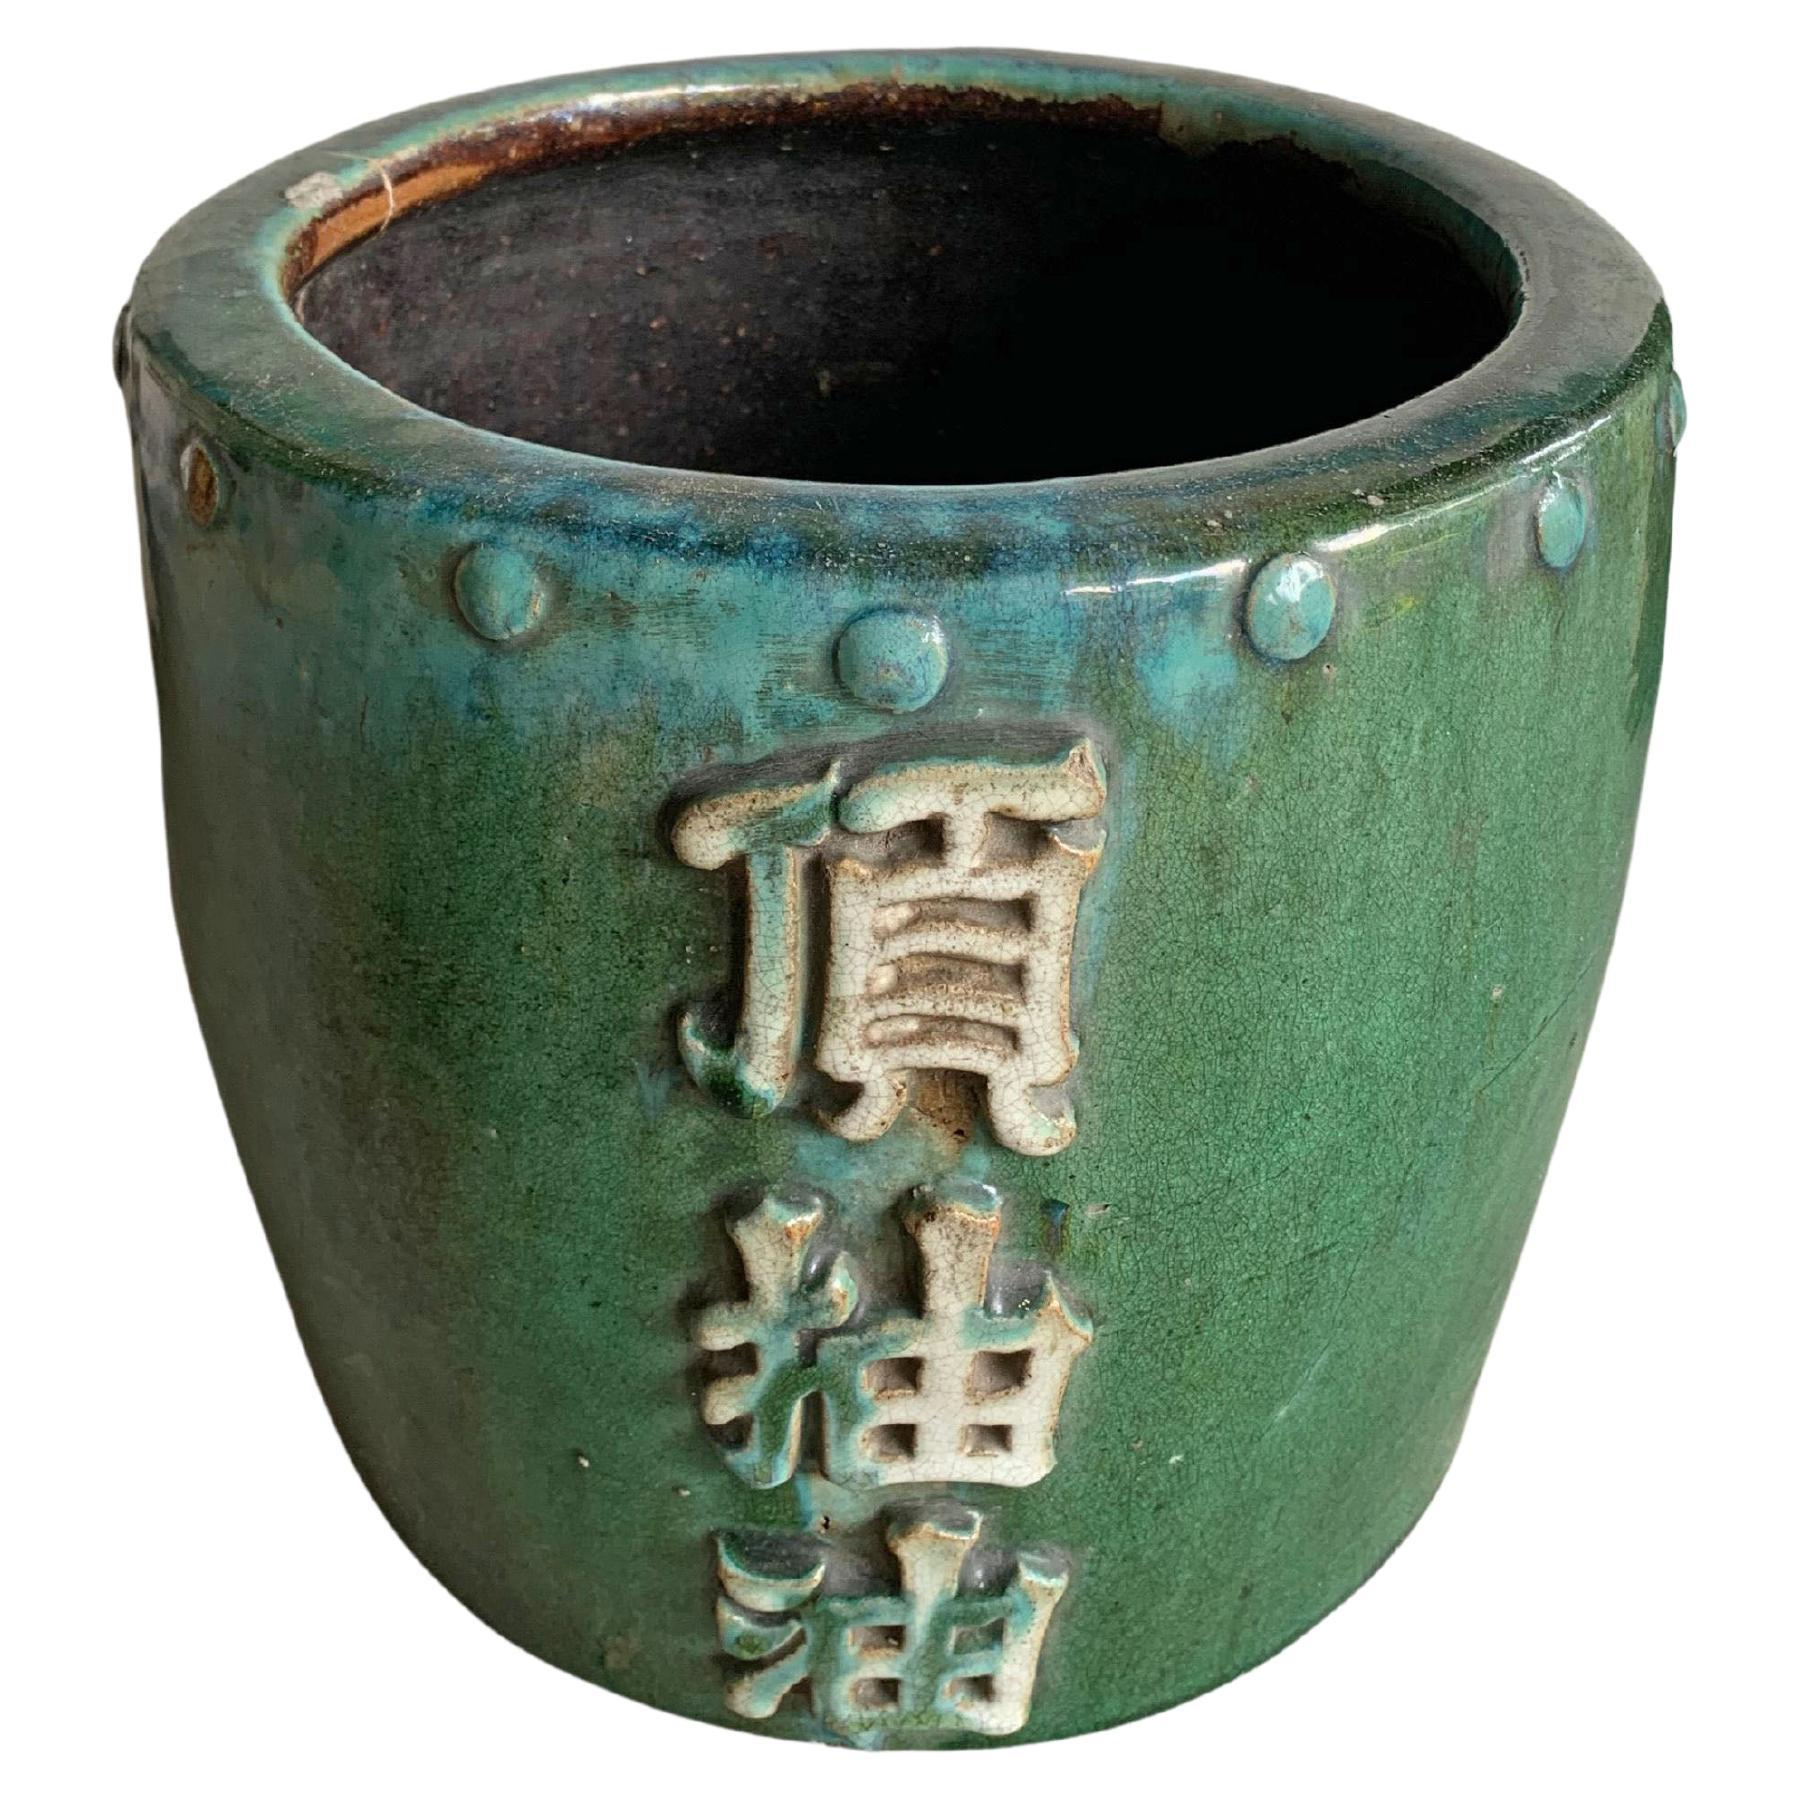 Pot de rangement à l'huile / jardinière chinoise en céramique émaillée verte, vers 1950